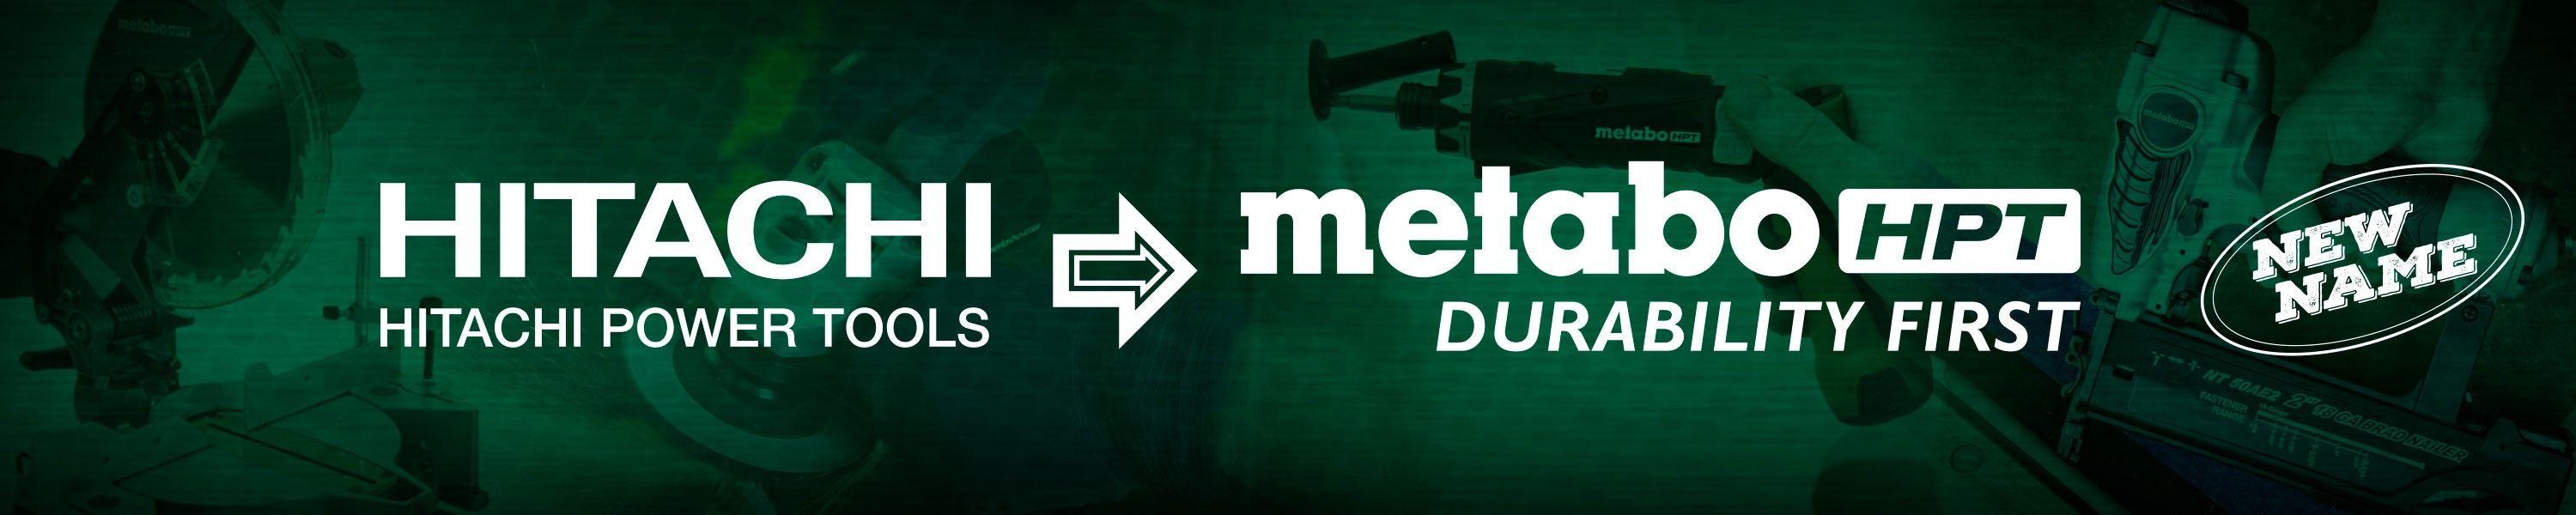 Metabo Logo - Amazon.com: Metabo HPT